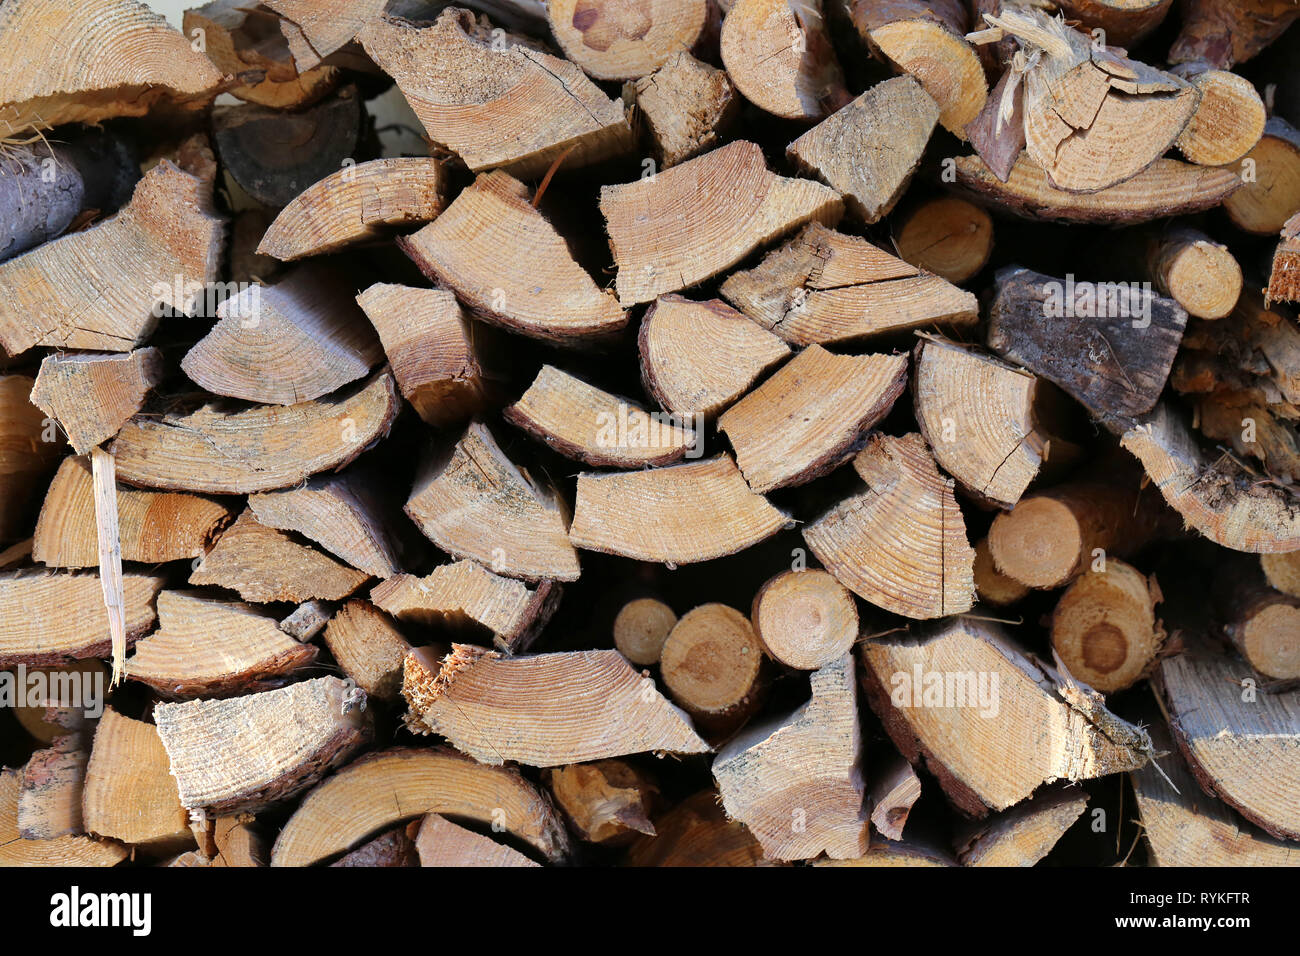 Catasta di legna da ardere in pila. Questi registri possono essere utilizzati per un caminetto o riscaldamento di una casa. Bella closeup foto è stata scattata in Finlandia. Immagine a colori. Foto Stock